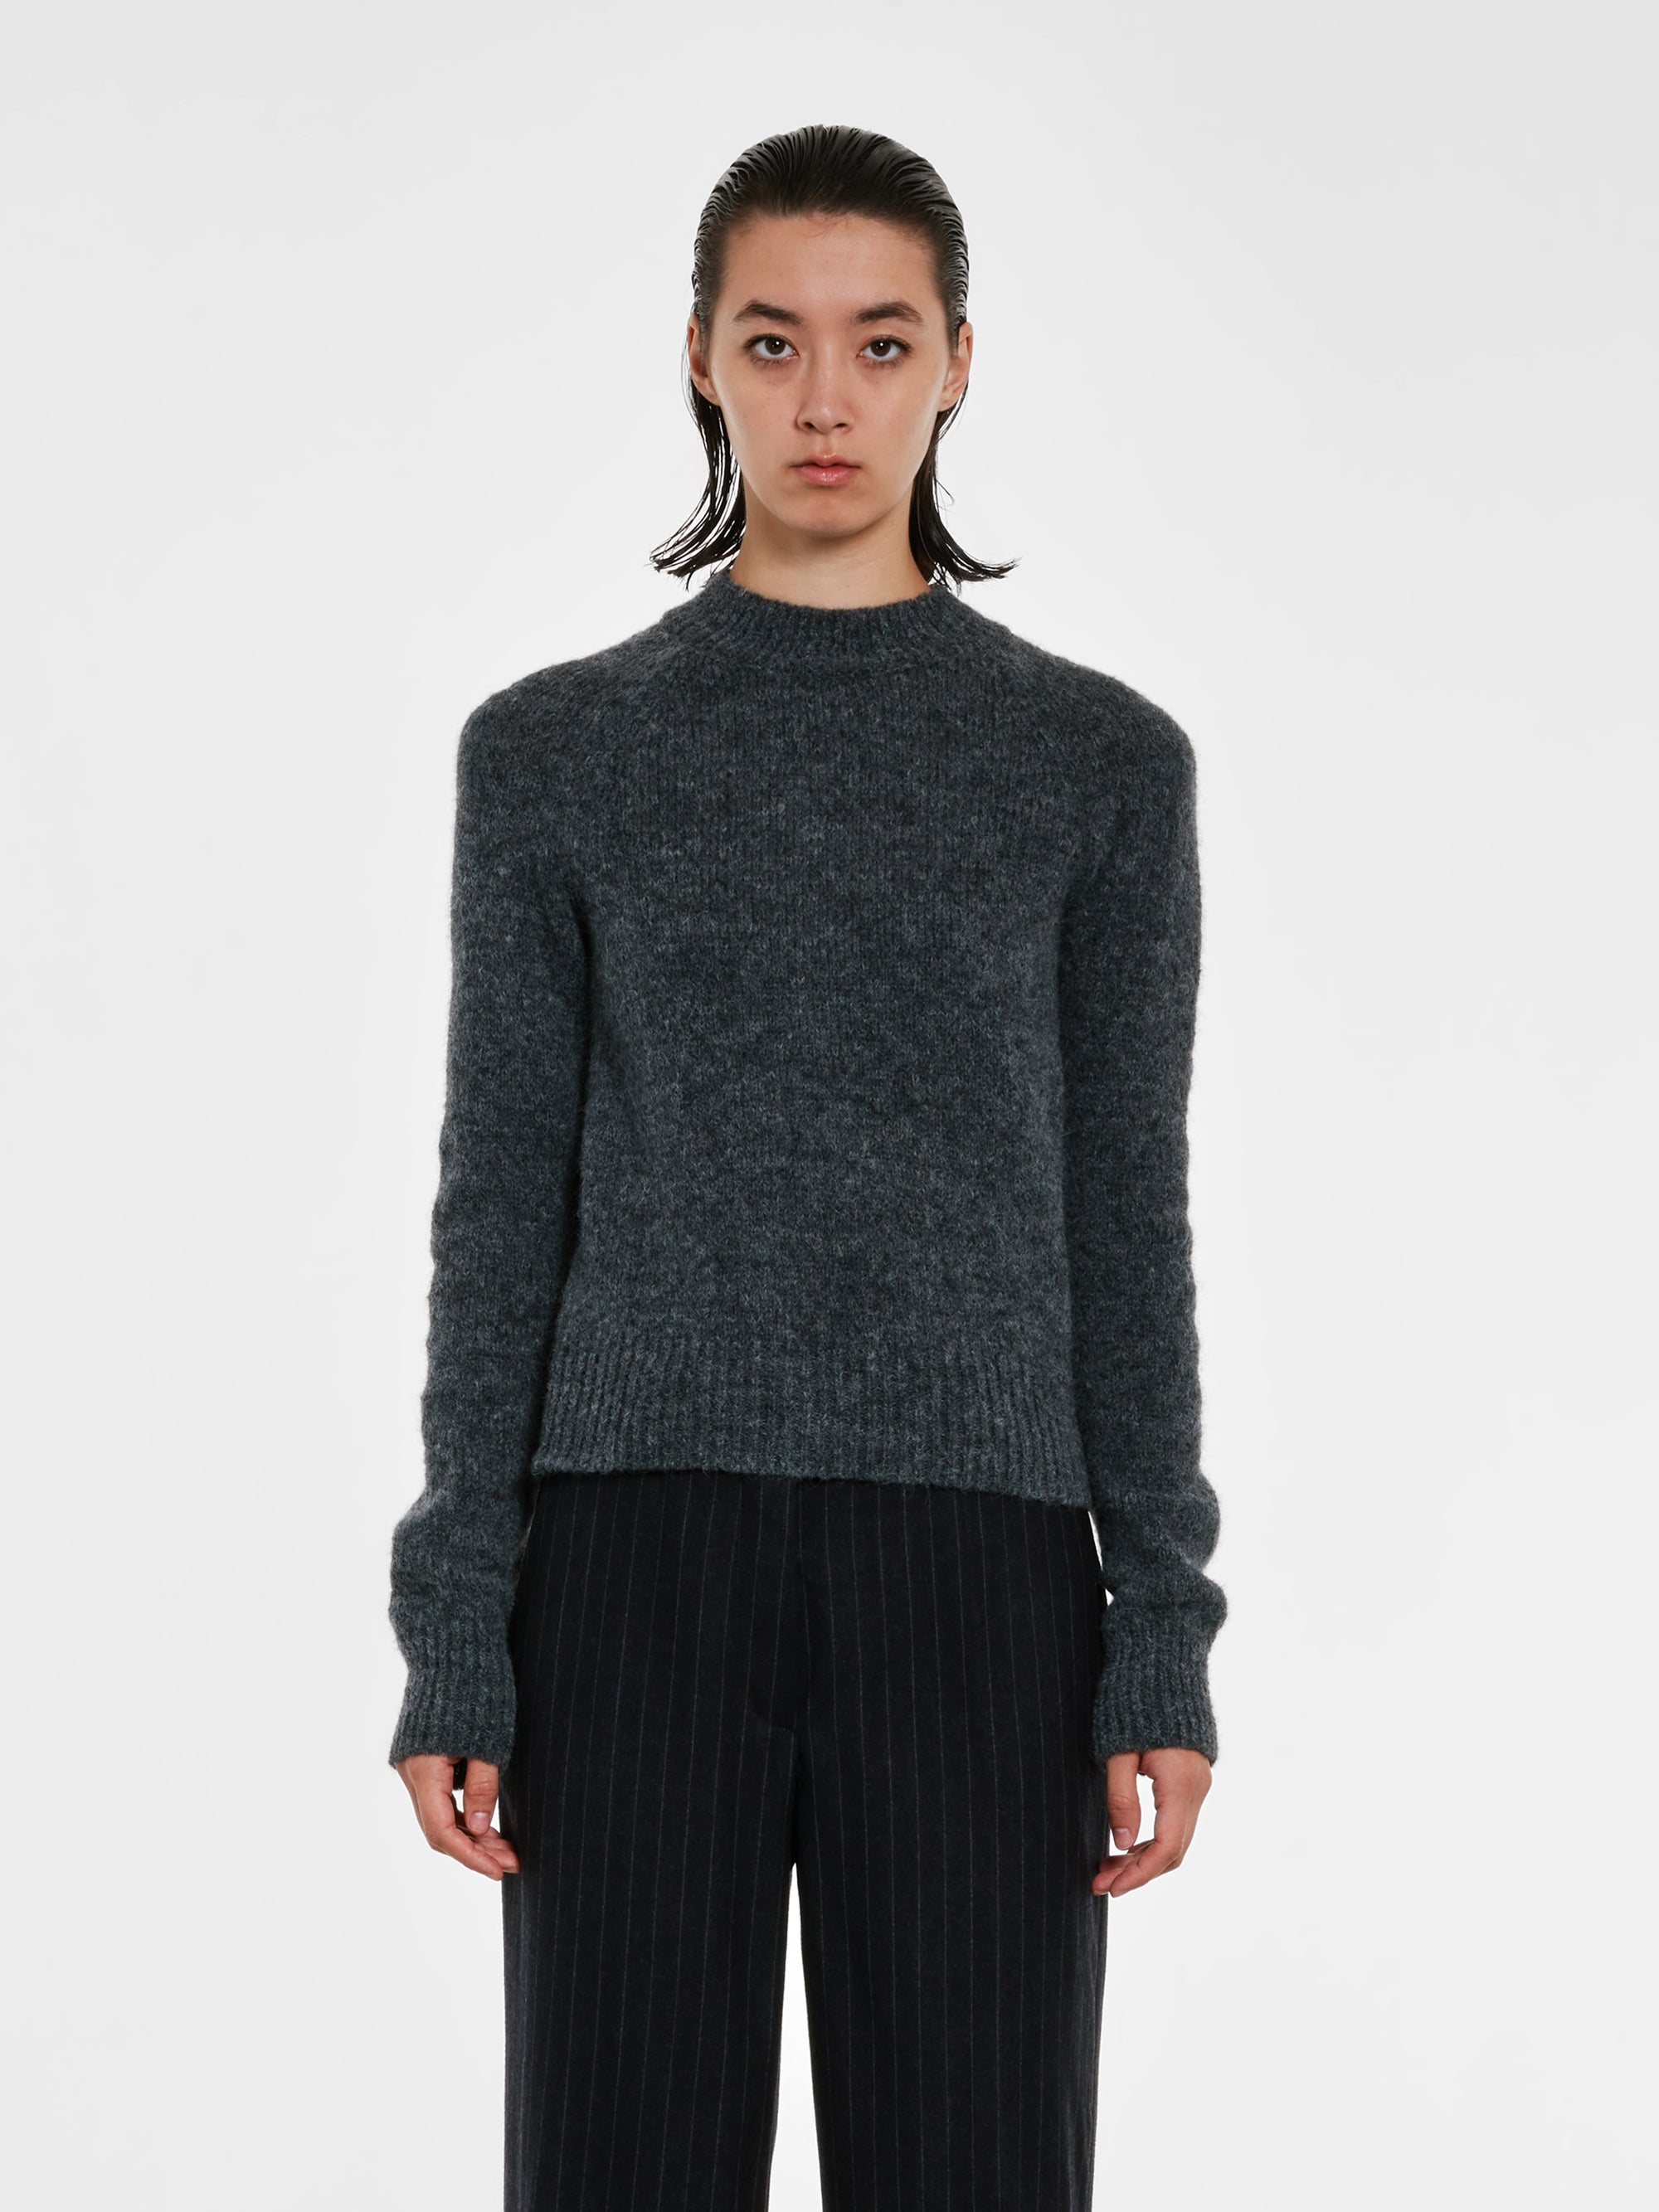 Dries Van Noten - Women’s Fitted Sweater - (Grey) view 2